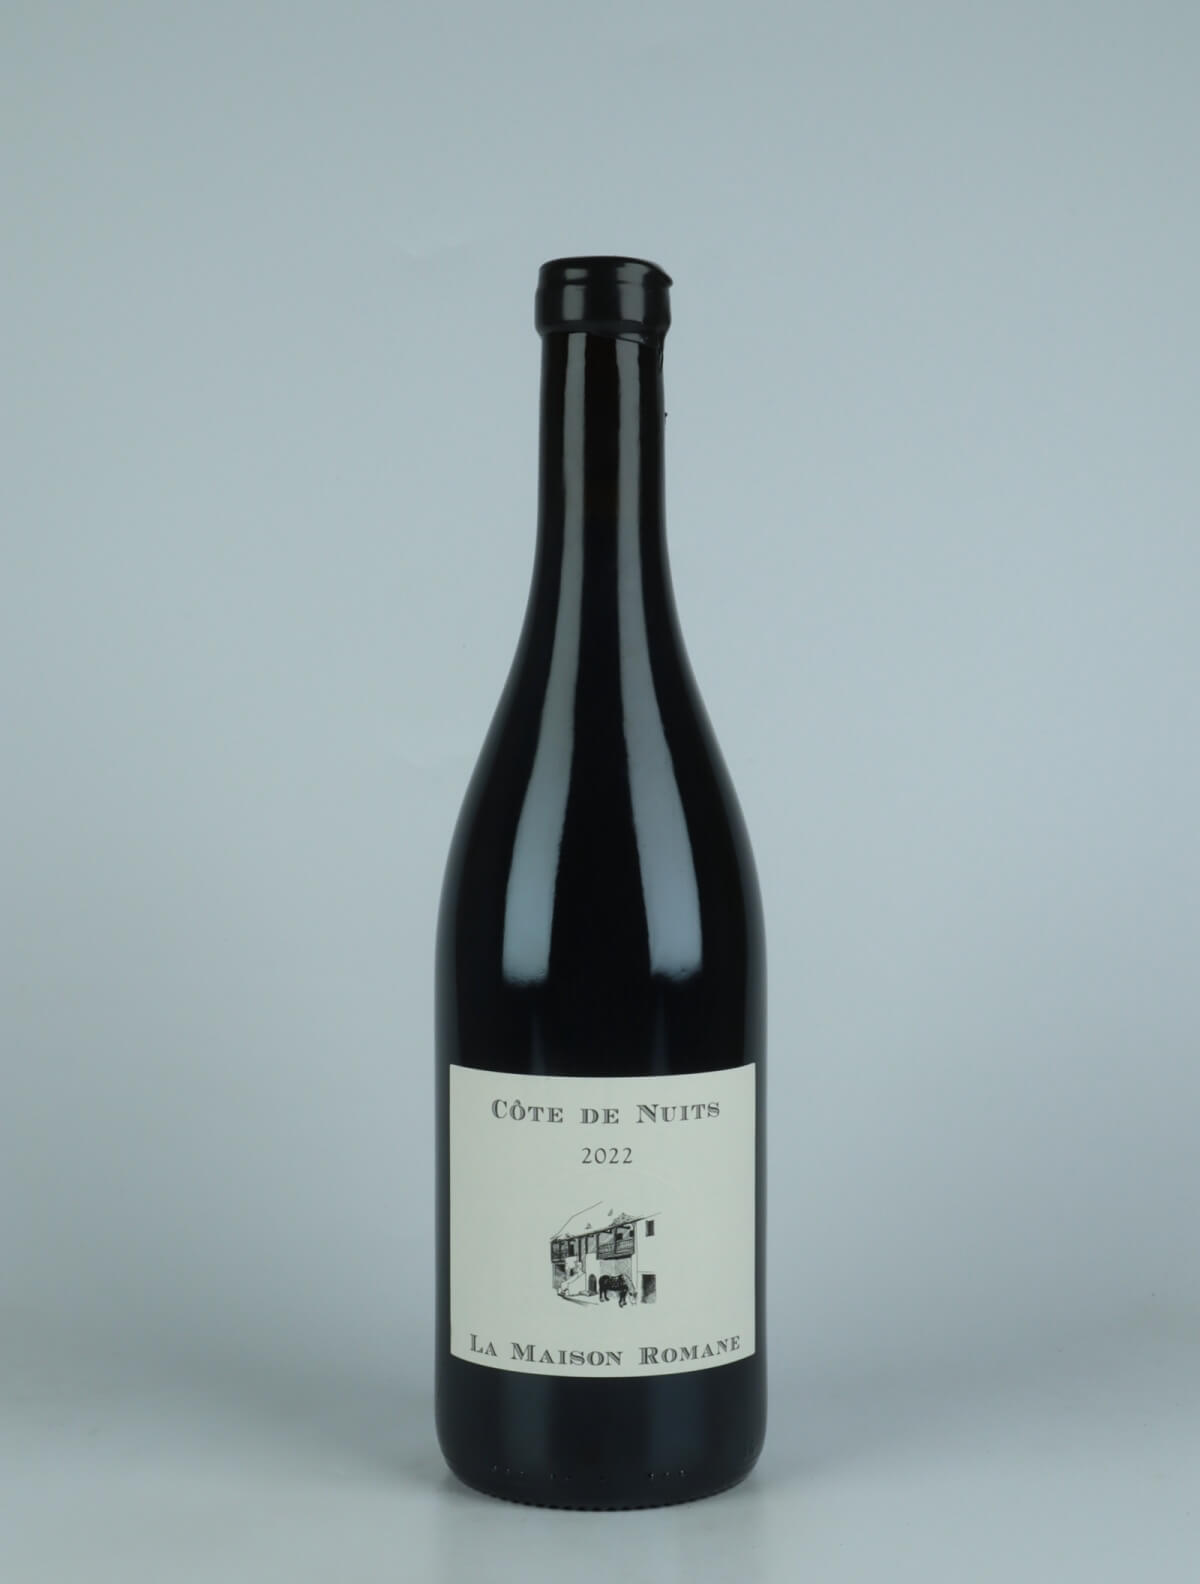 En flaske 2022 Côtes de Nuits Rødvin fra La Maison Romane, Bourgogne i Frankrig